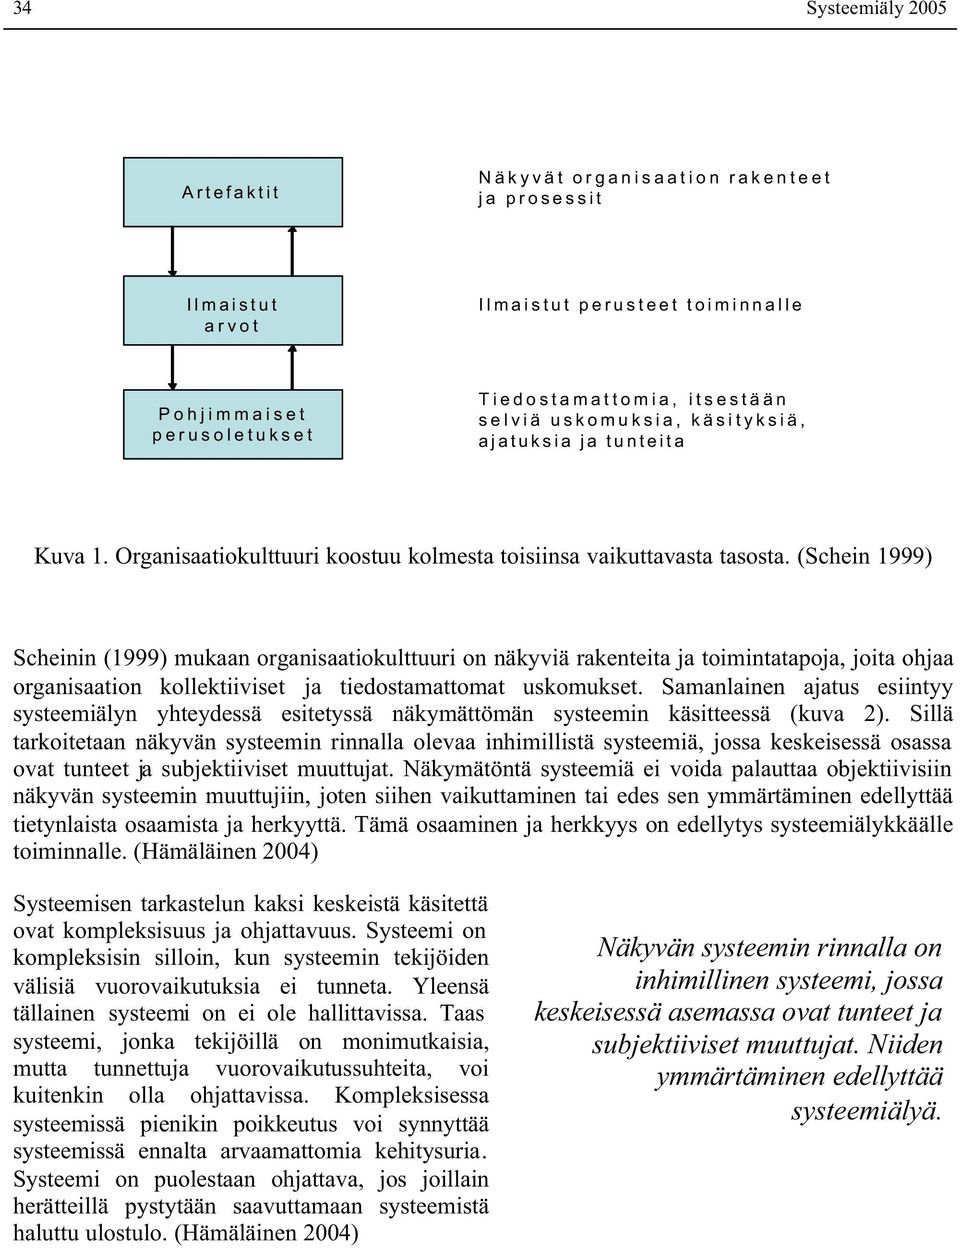 (Schein 1999) Scheinin (1999) mukaan organisaatiokulttuuri on näkyviä rakenteita ja toimintatapoja, joita ohjaa organisaation kollektiiviset ja tiedostamattomat uskomukset.